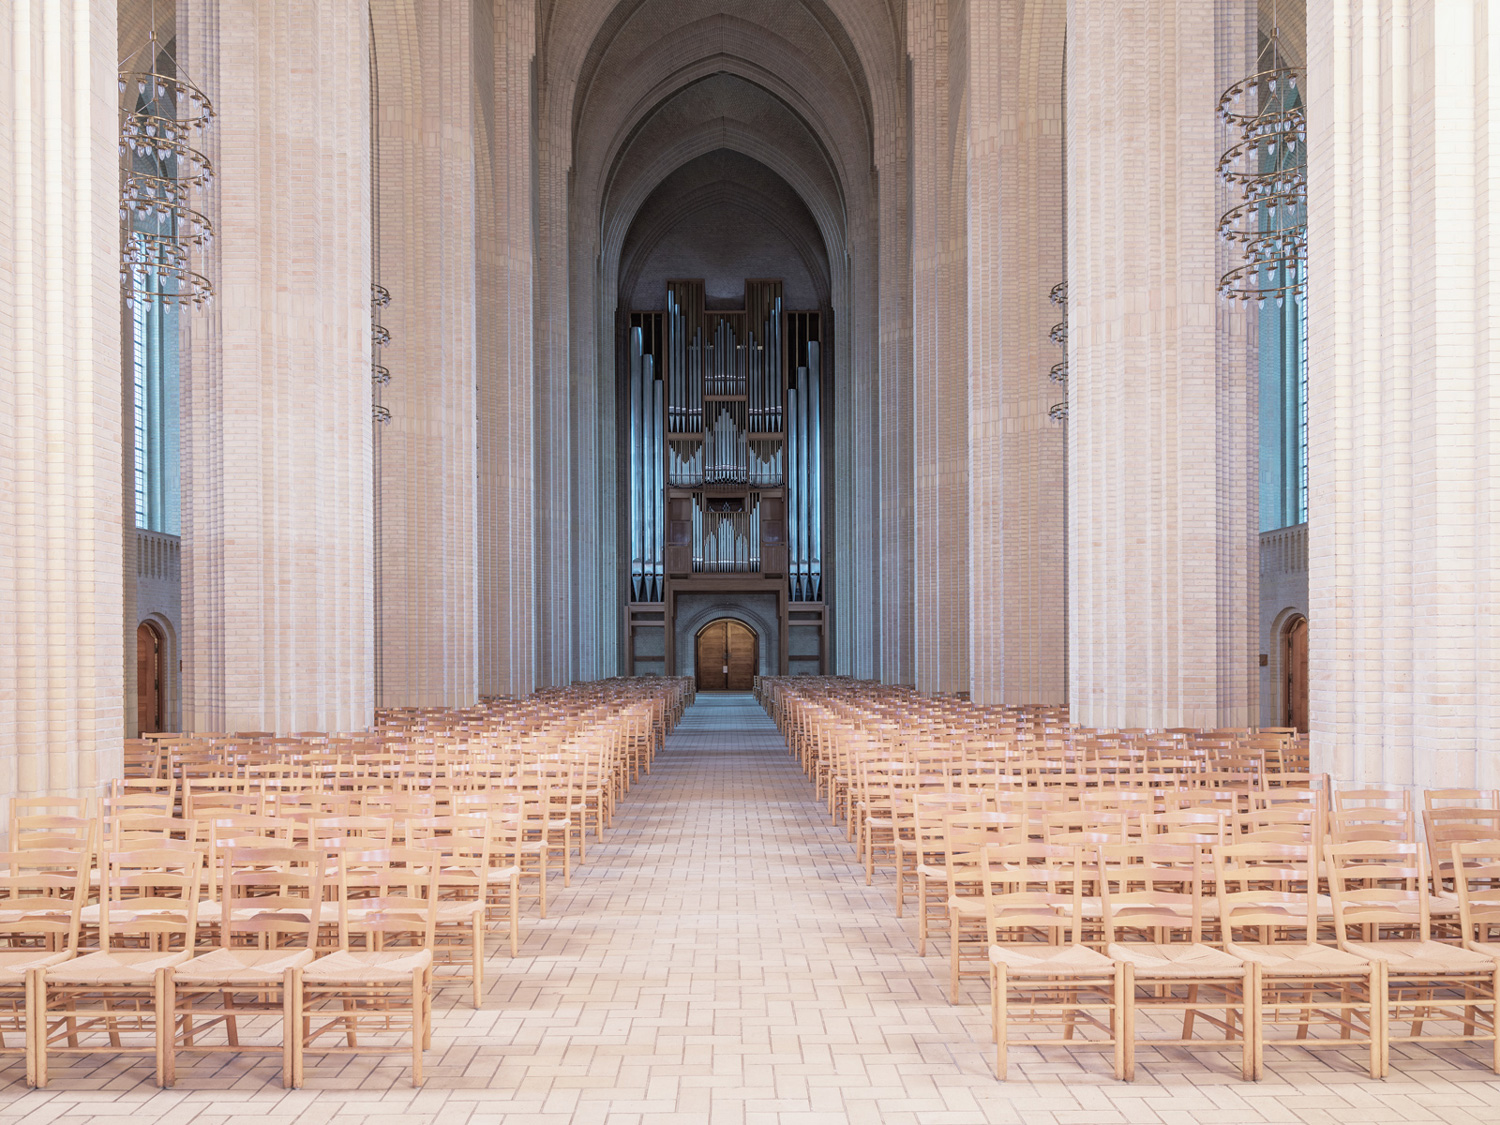 Фотографии величественной церкви в стиле экспрессионизма